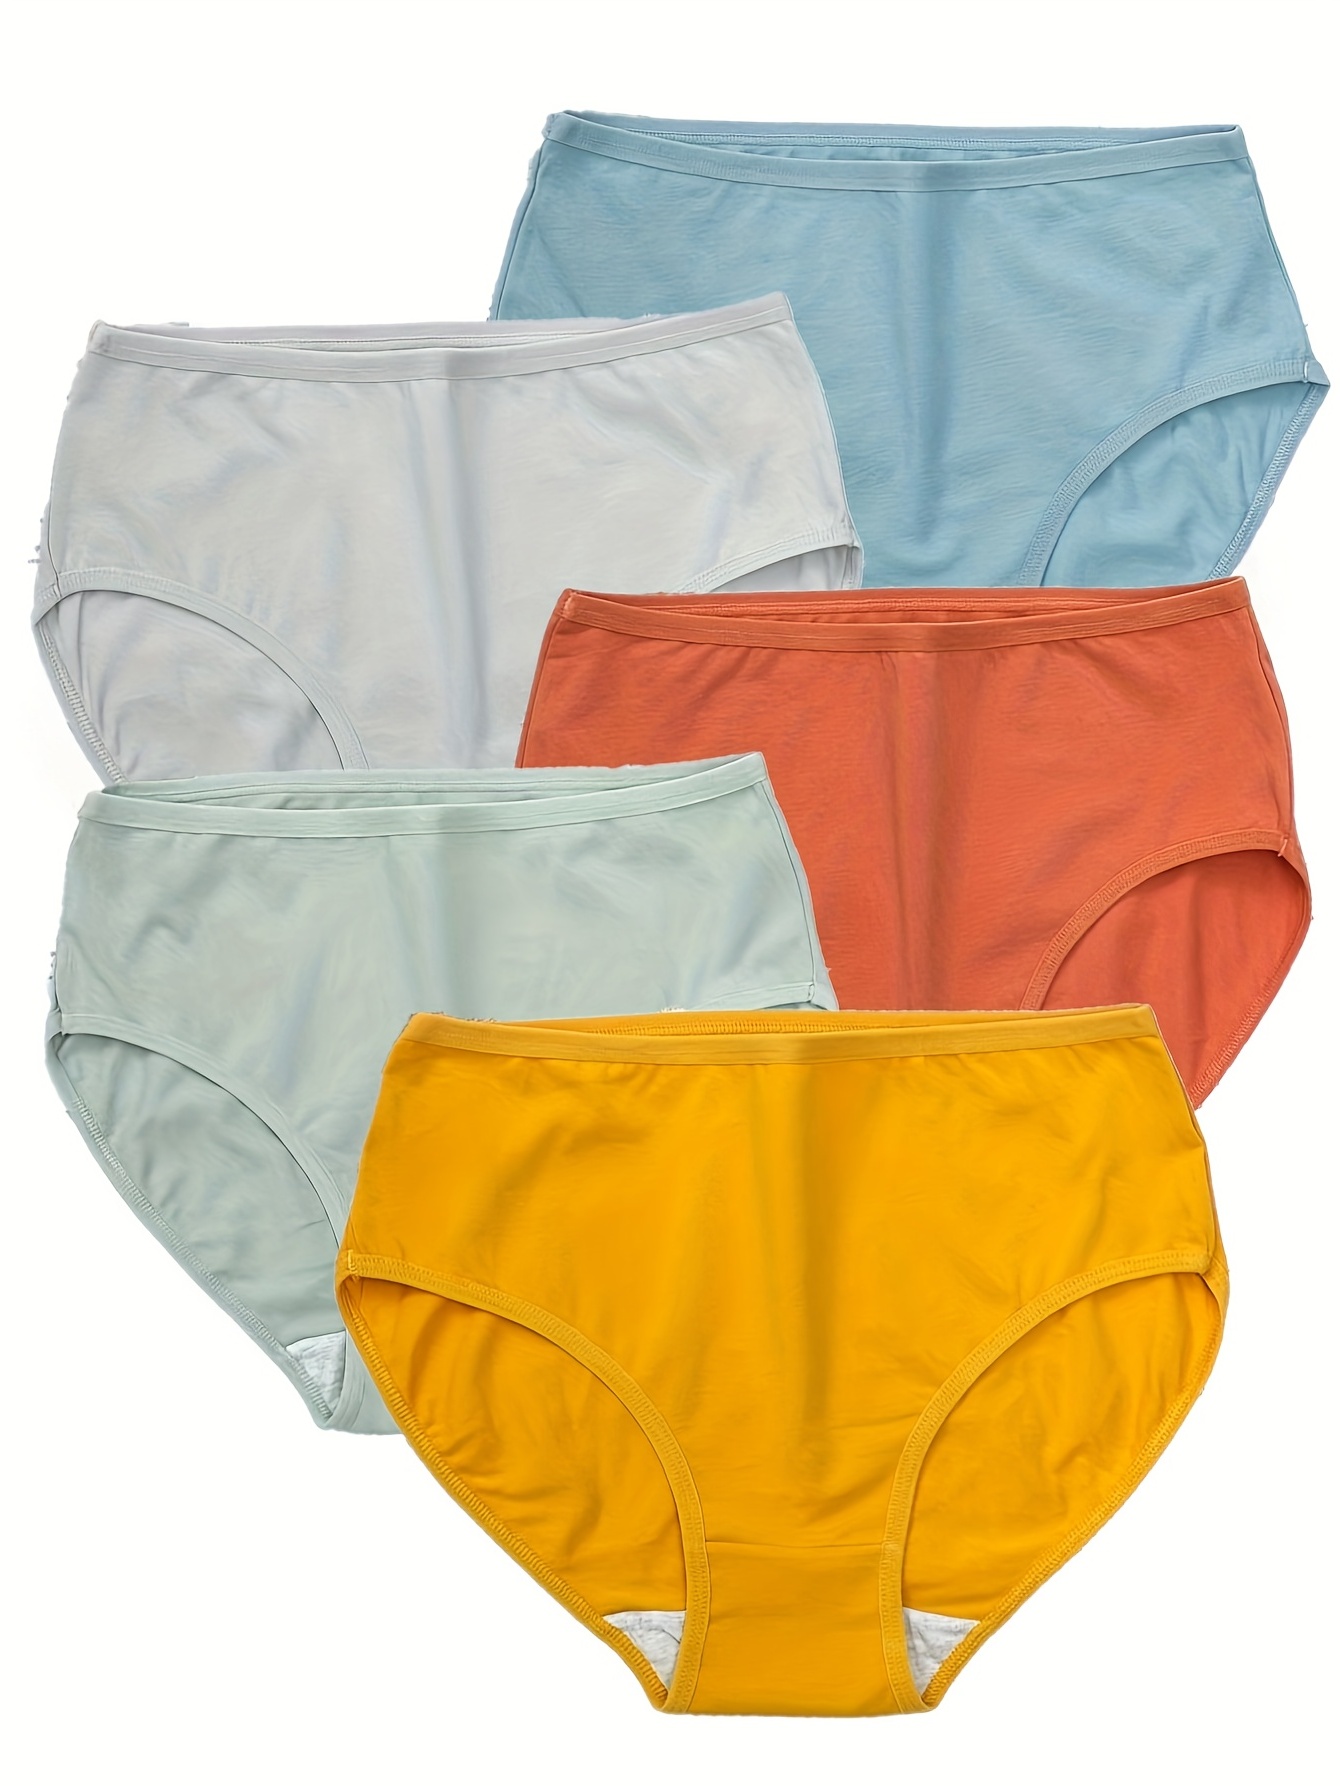 Everdries Leakproof Underwear, 5PCS Everdries Leakproof